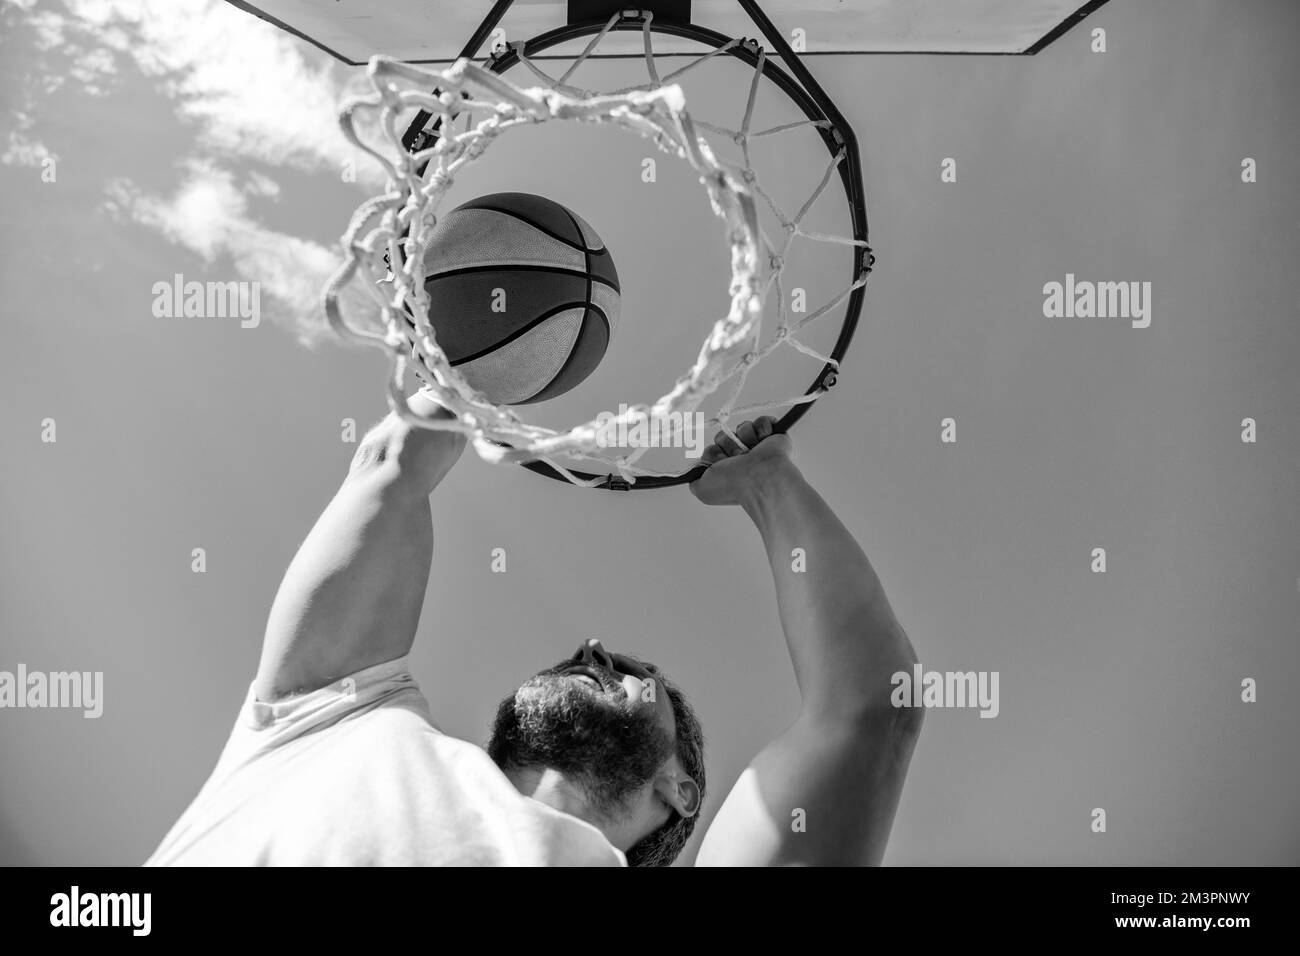 le joueur de basket-ball lance le ballon dans le panier extérieur, en ciblant Banque D'Images